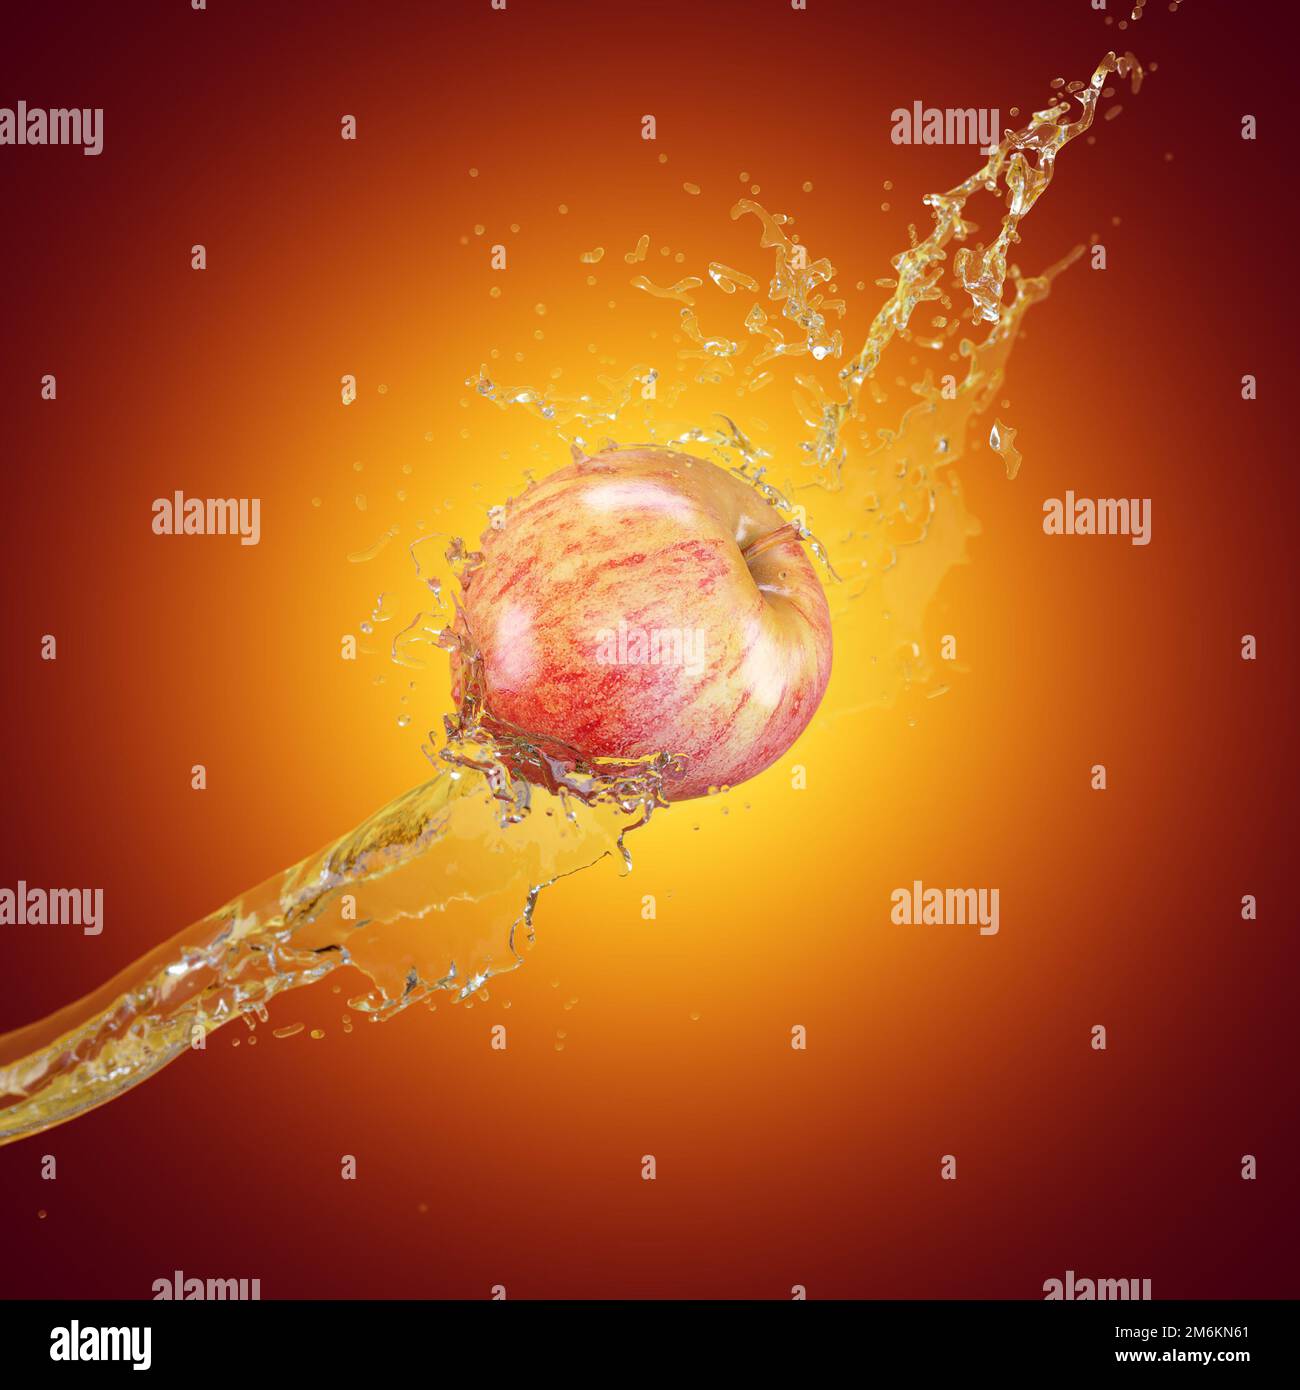 La mela matura in spruzzi d'acqua vola su uno sfondo a gradiente rosso-giallo. Poster pubblicitario. rendering 3d Foto Stock